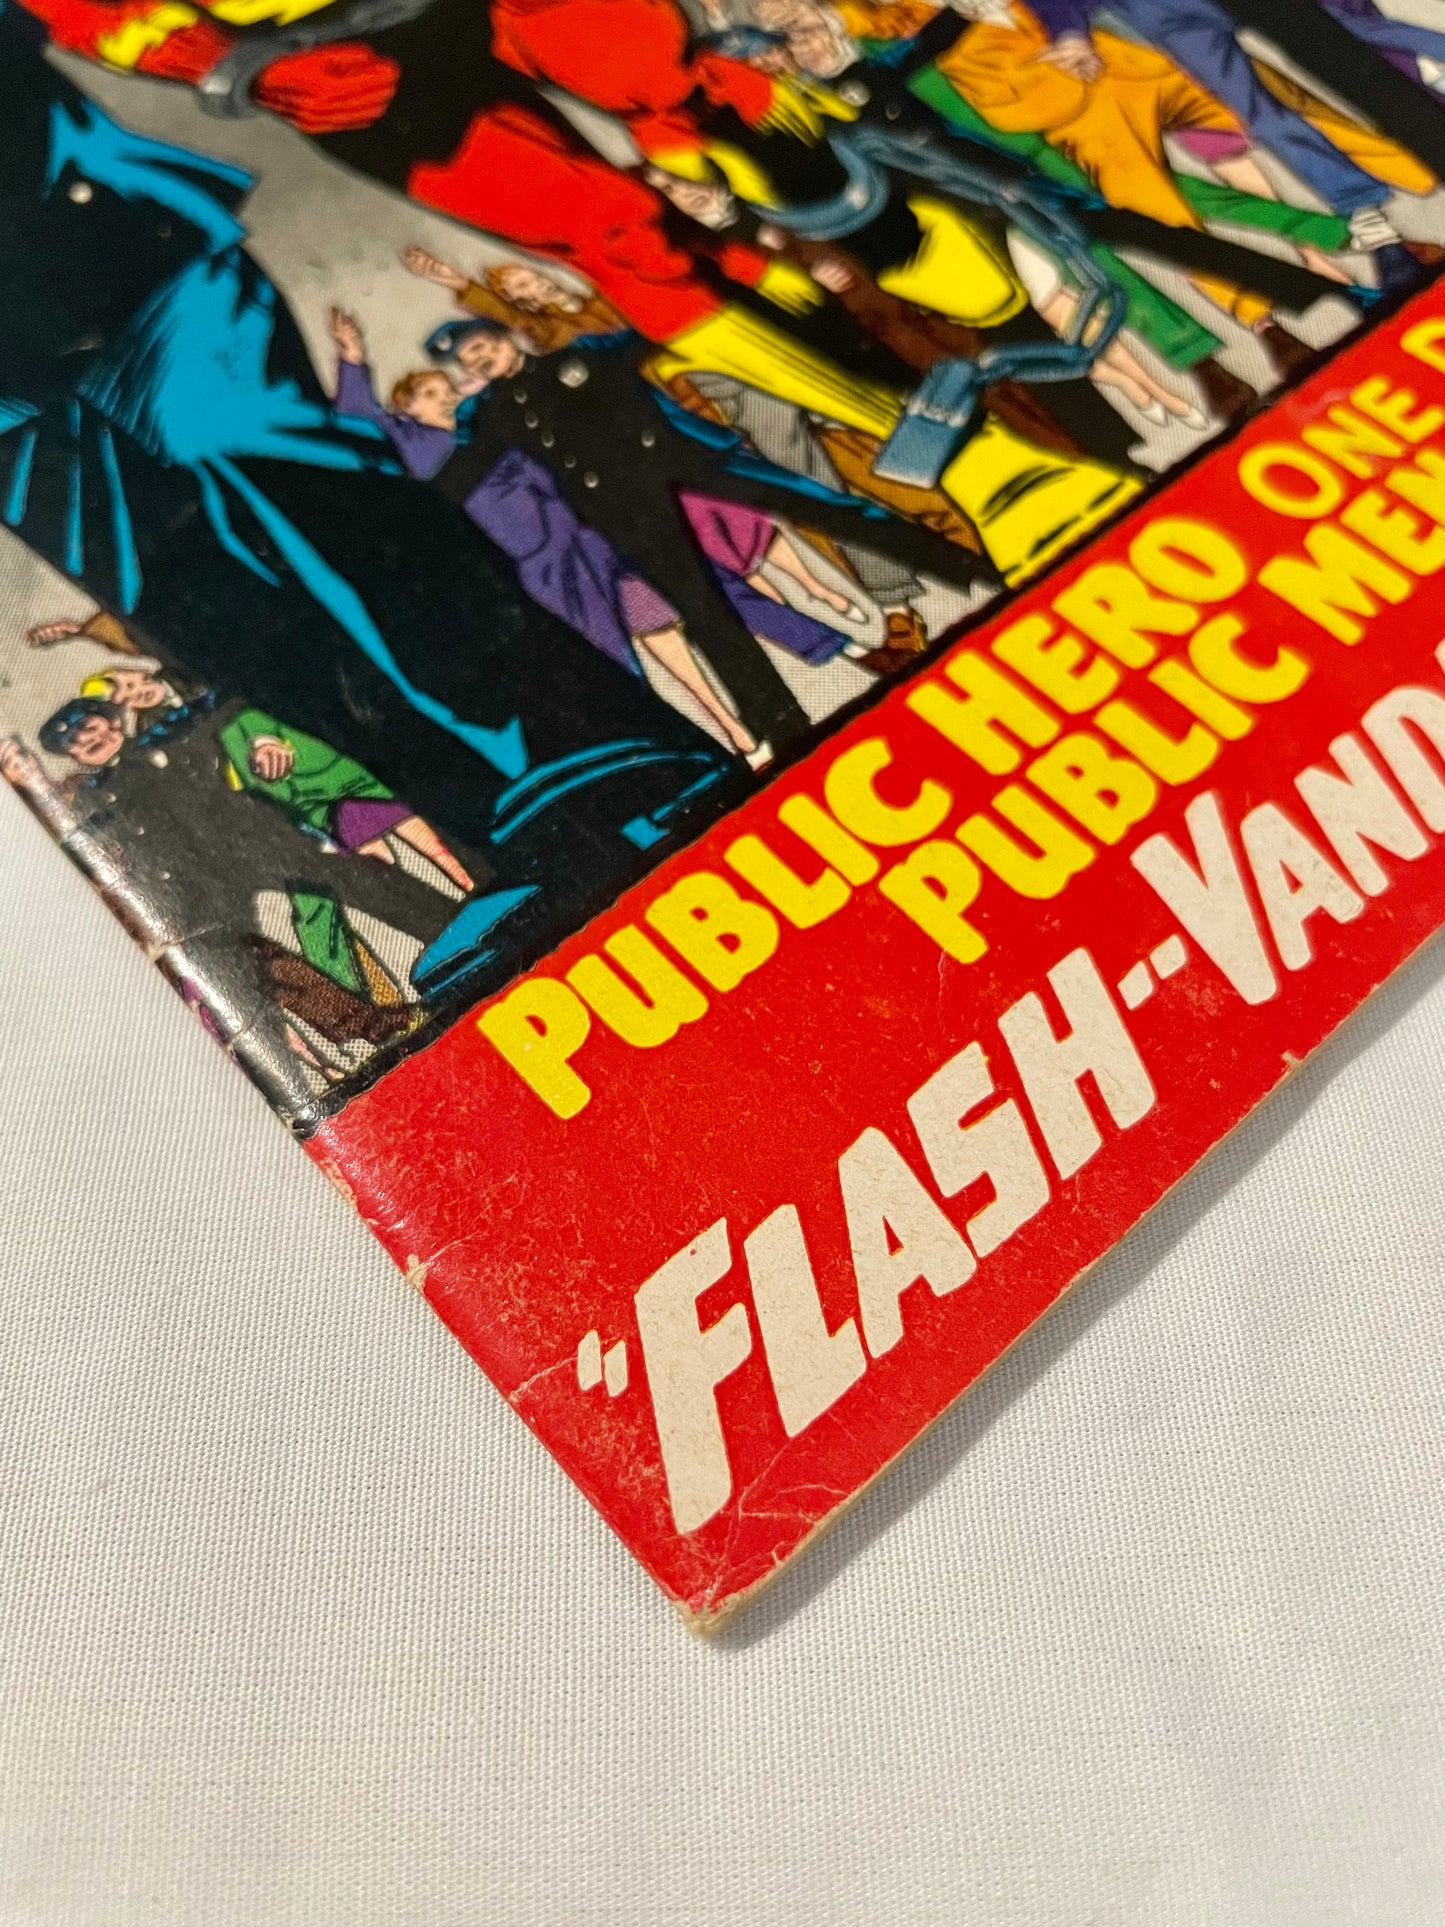 DC Comics The Flash No. 164